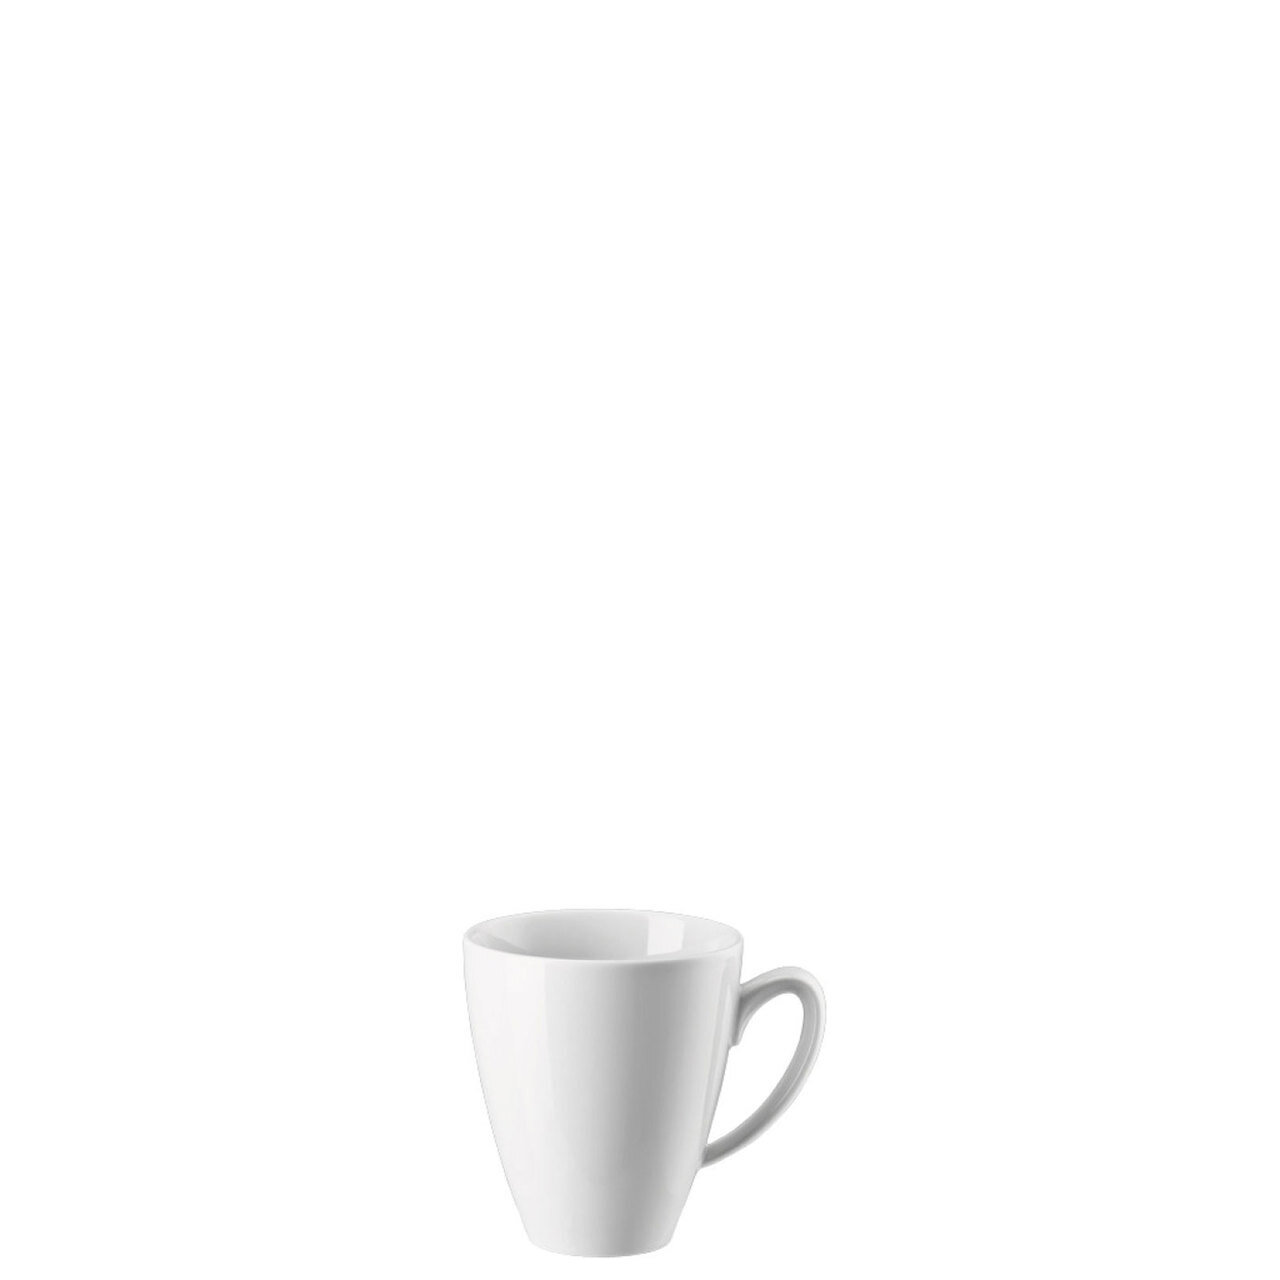 Rosenthal Mesh White Mug with Handle 11 3/4 oz